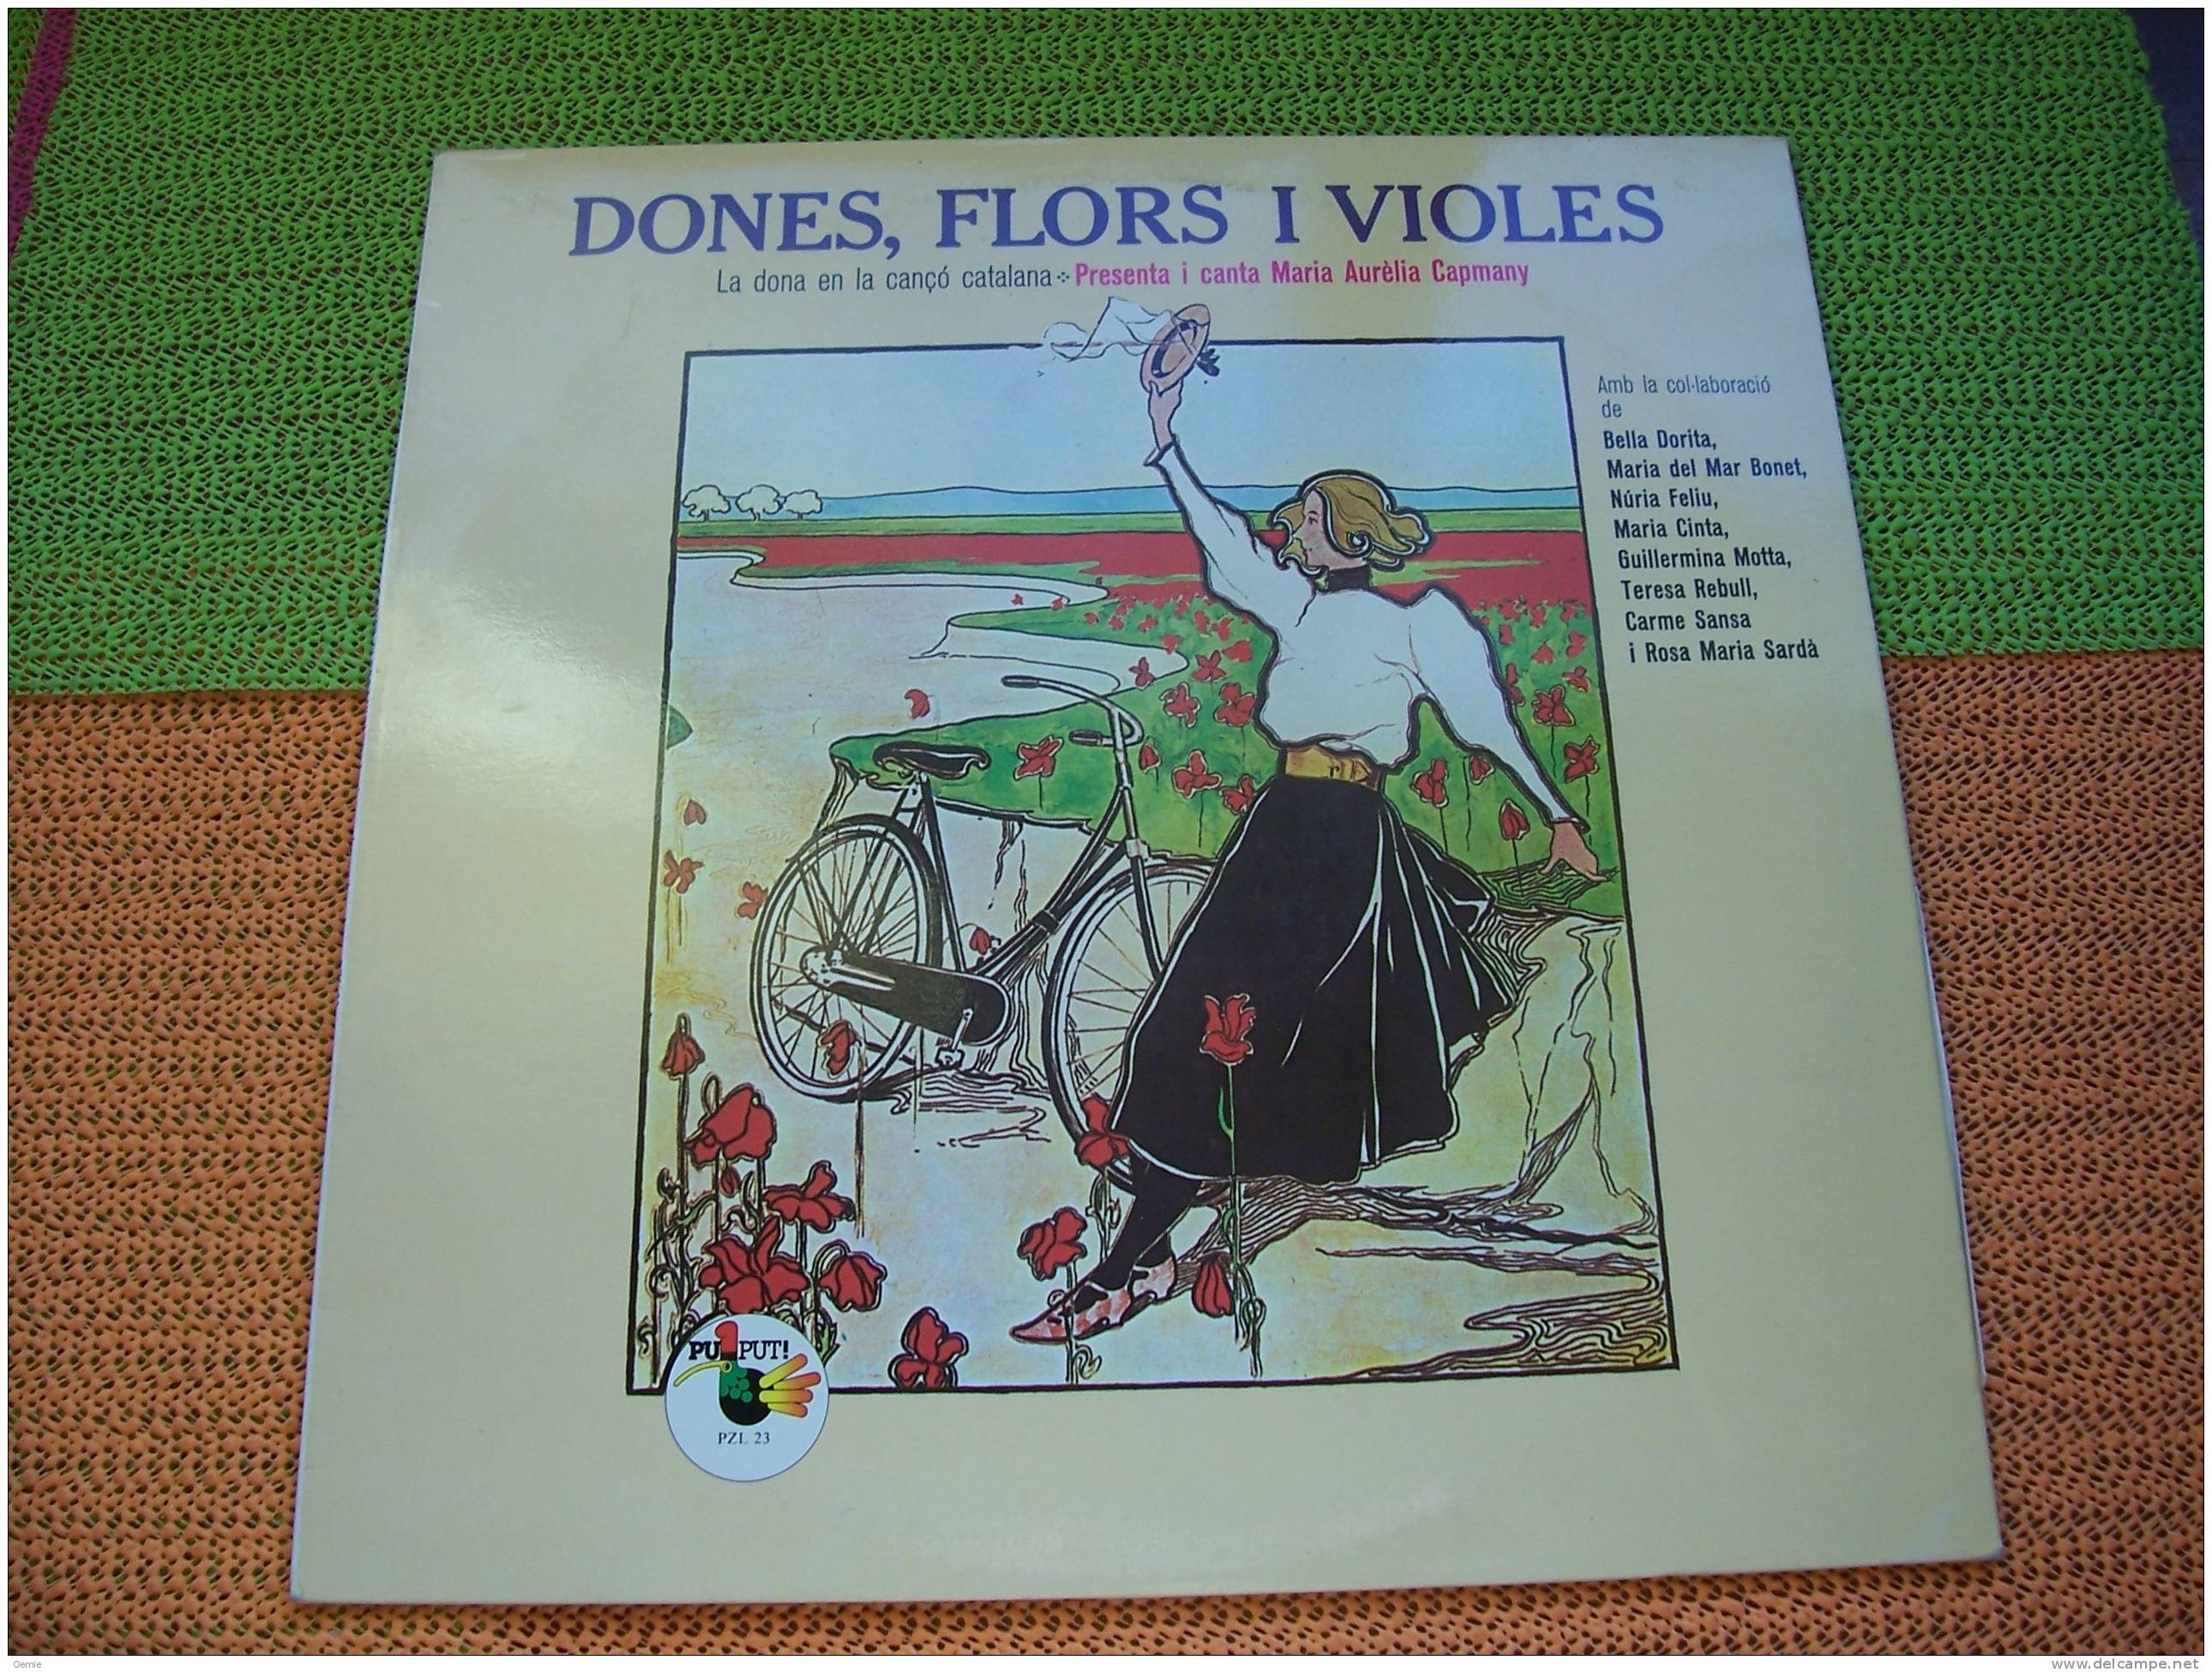 DONES FLORS I VIOLES  °  LA DONA EN LA CANCO CATALANA - Other - Spanish Music